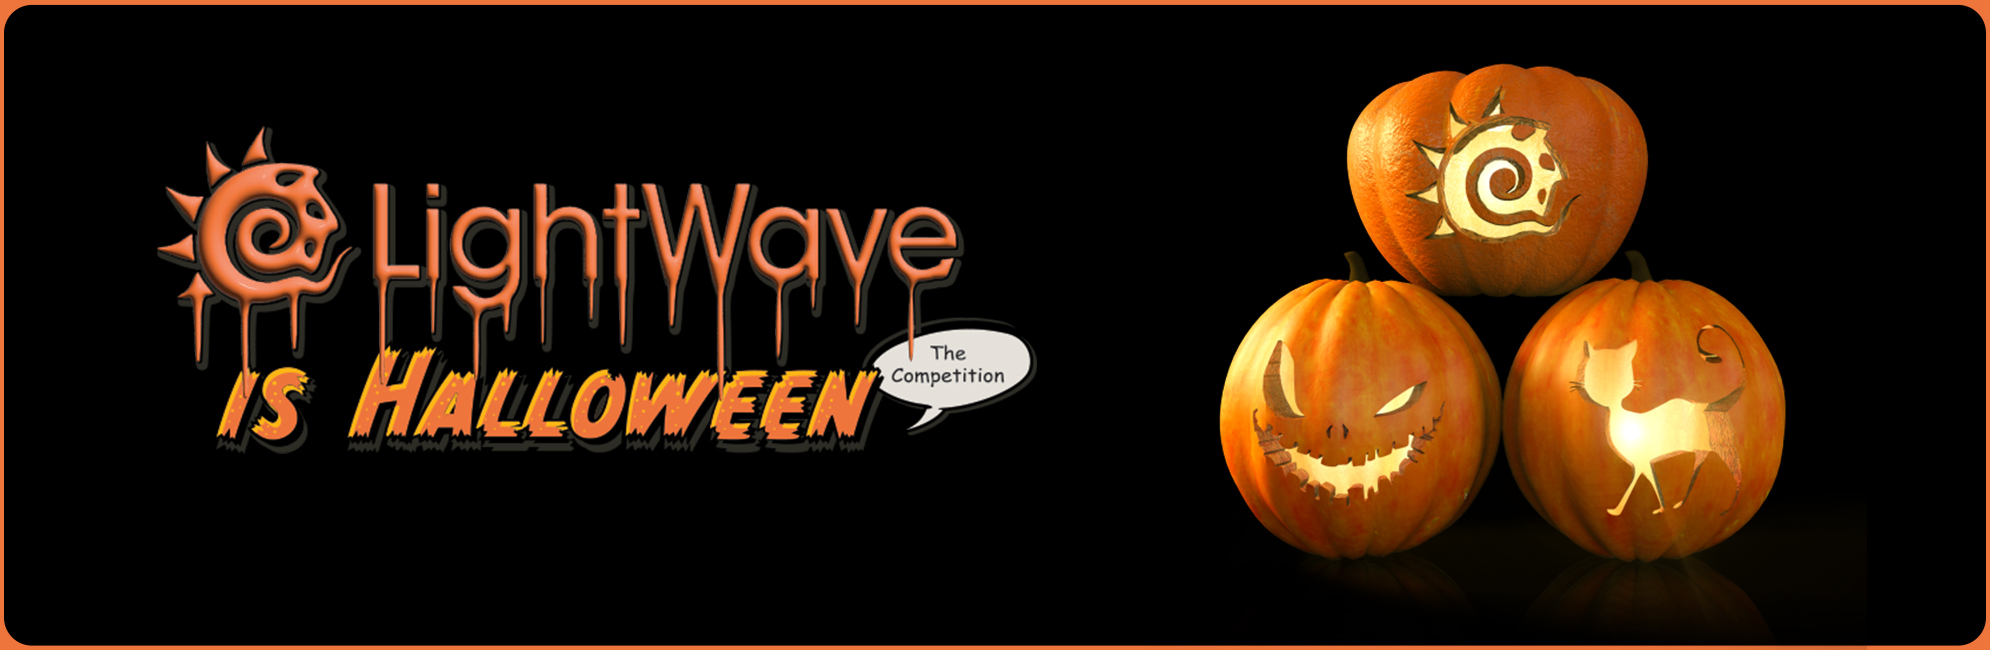 Nome: LightWave is Halloween  LightWave 3D Promo 20320918.jpg
Visite: 99
Dimensione: 387.4 KB